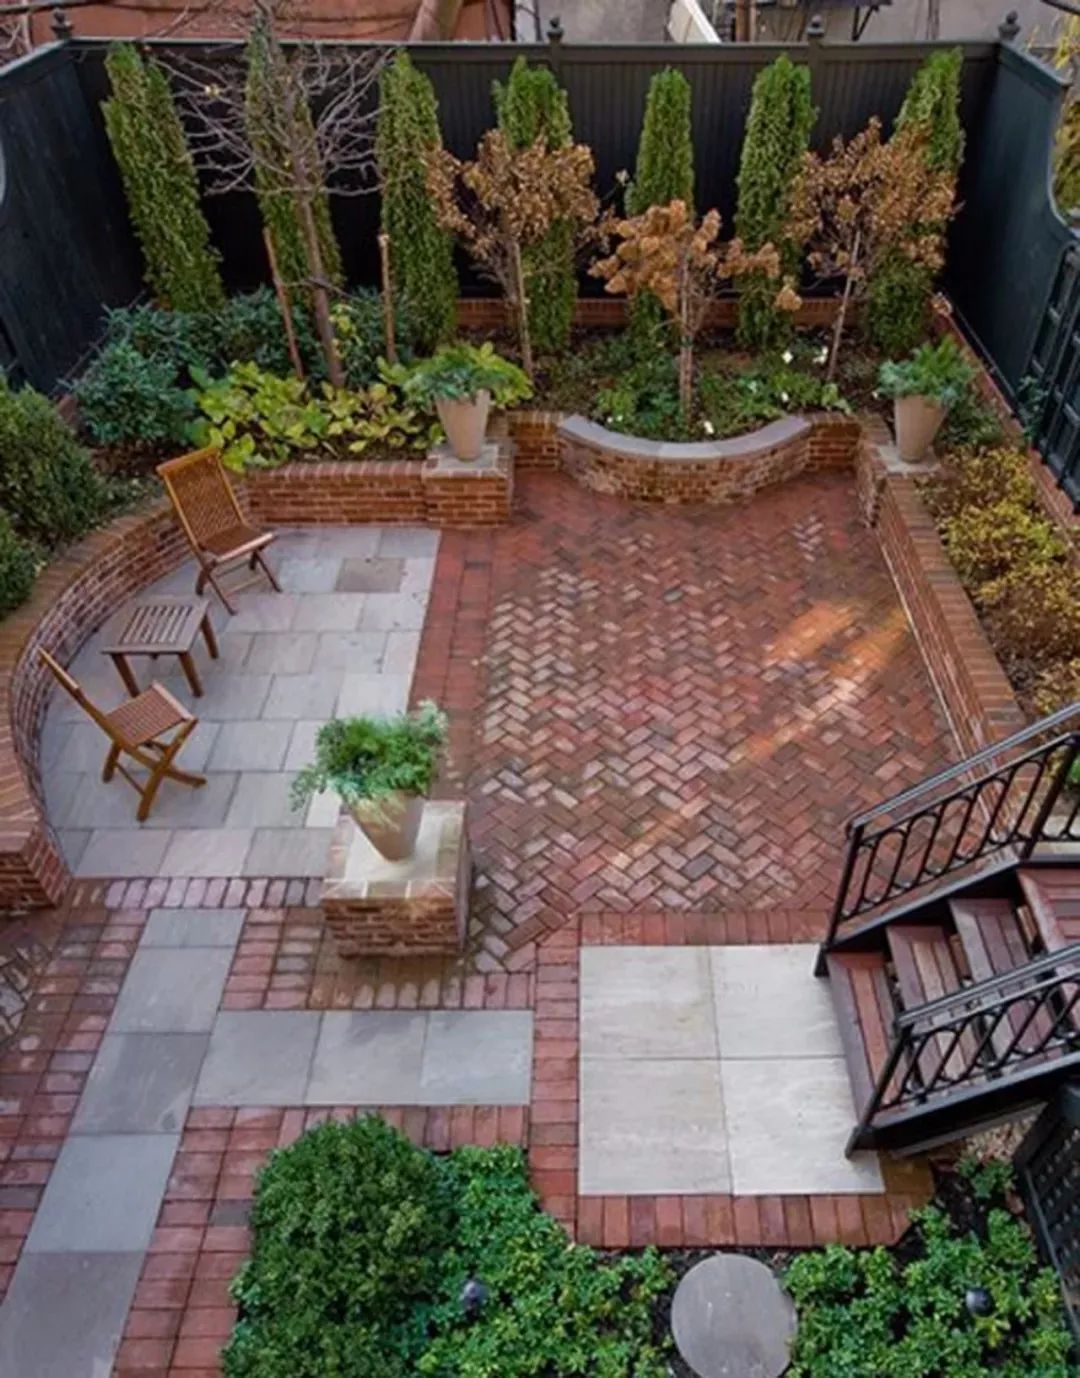 园艺砖,给庭院沉淀的美感